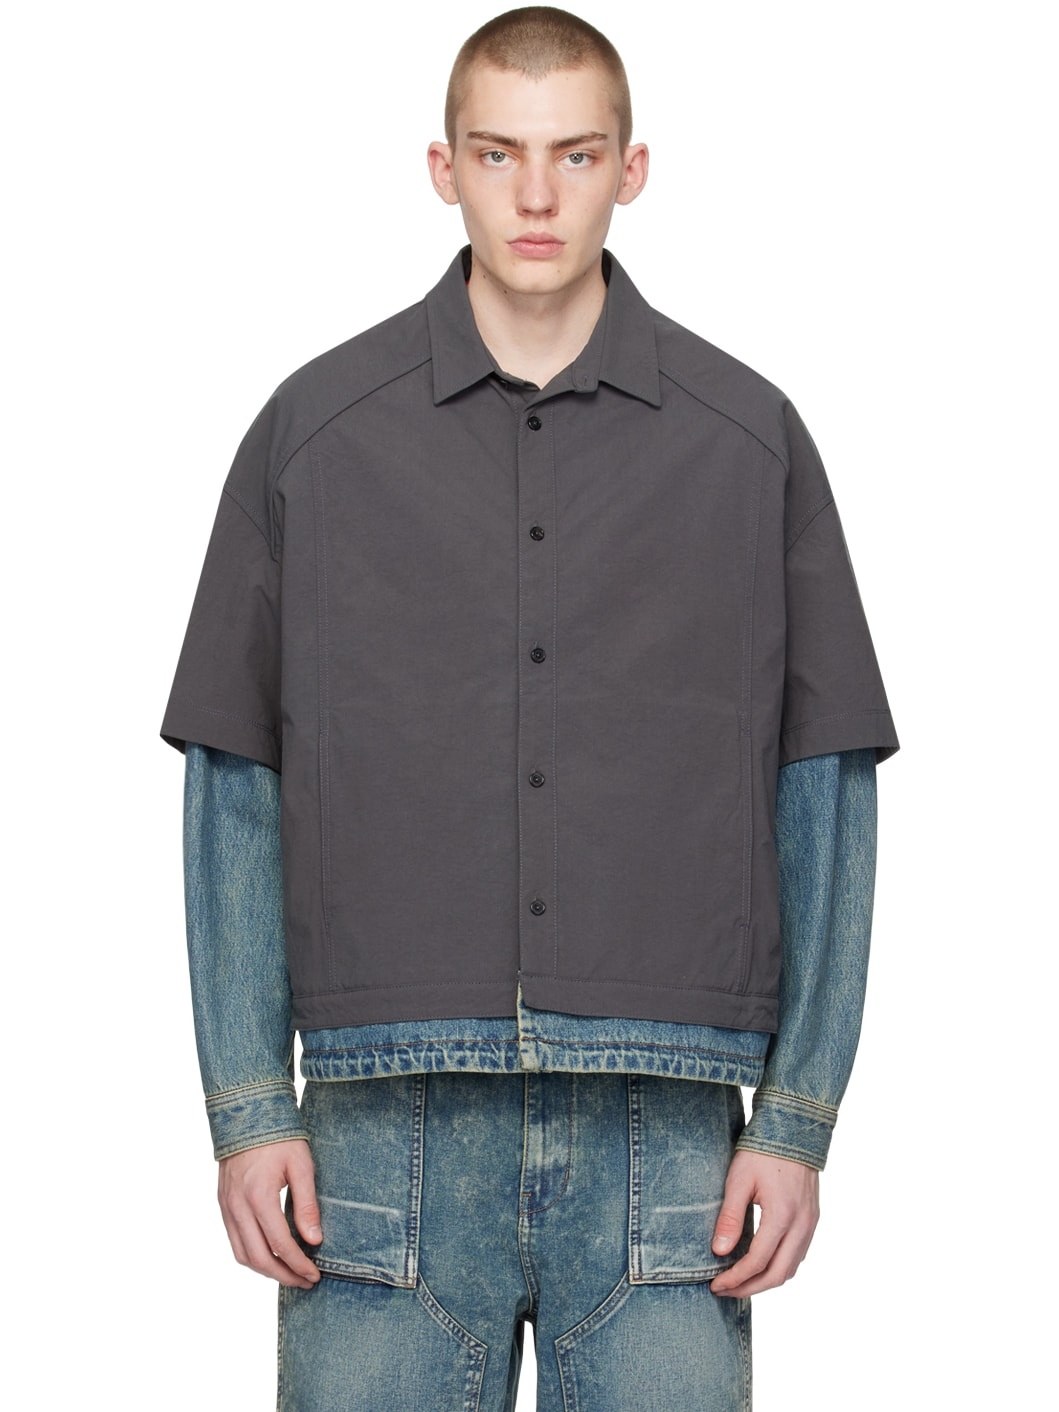 Gray & Indigo Layered Shirt - 1